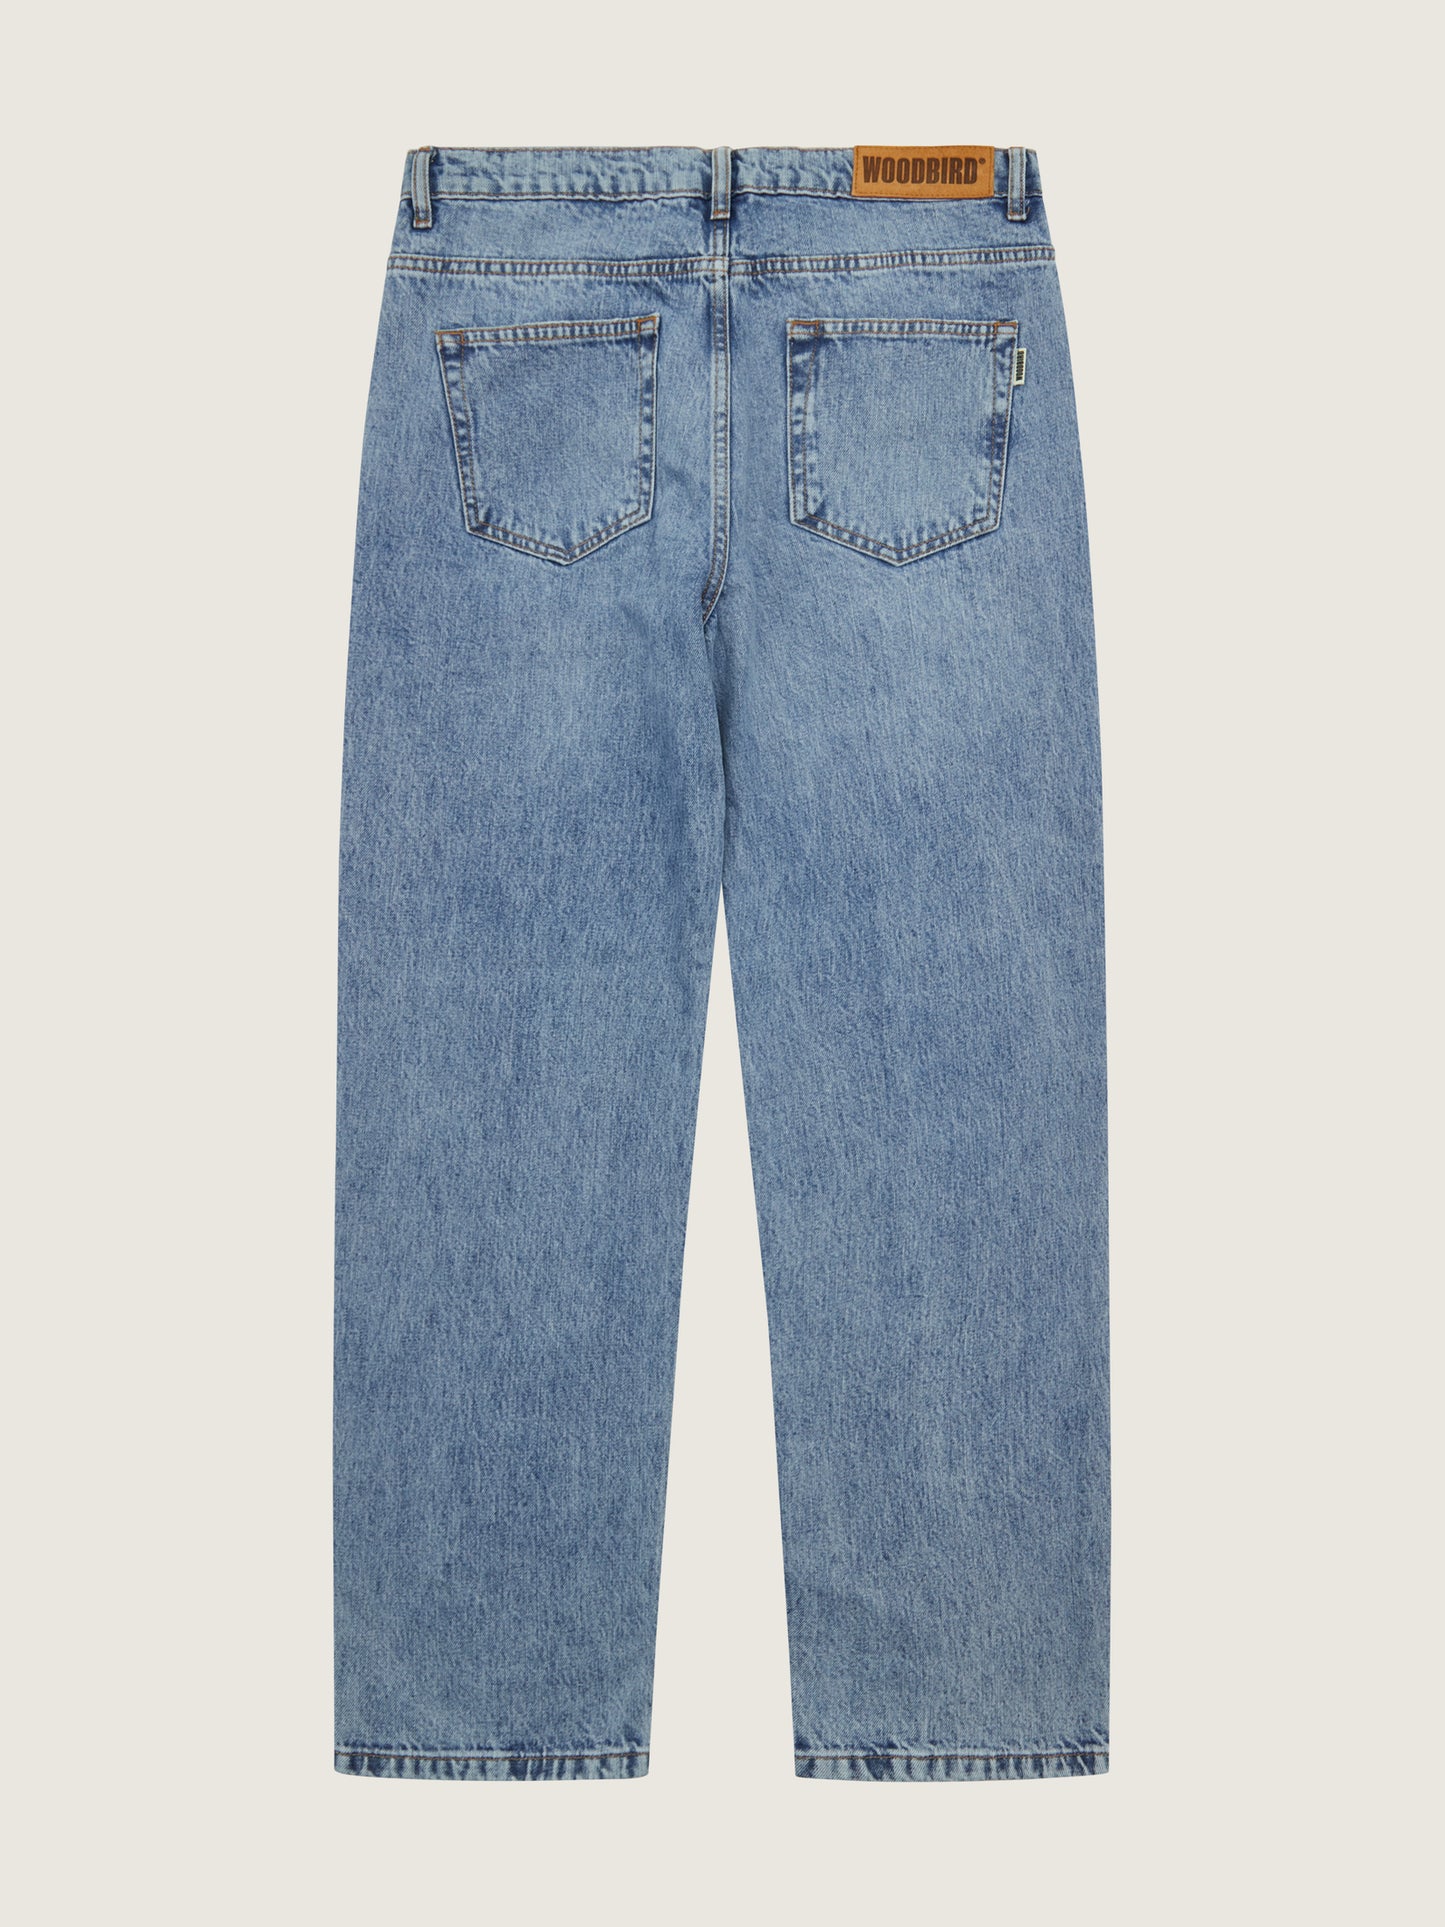 Woodbird WBLeroy Doone Jeans Jeans Washed Blue